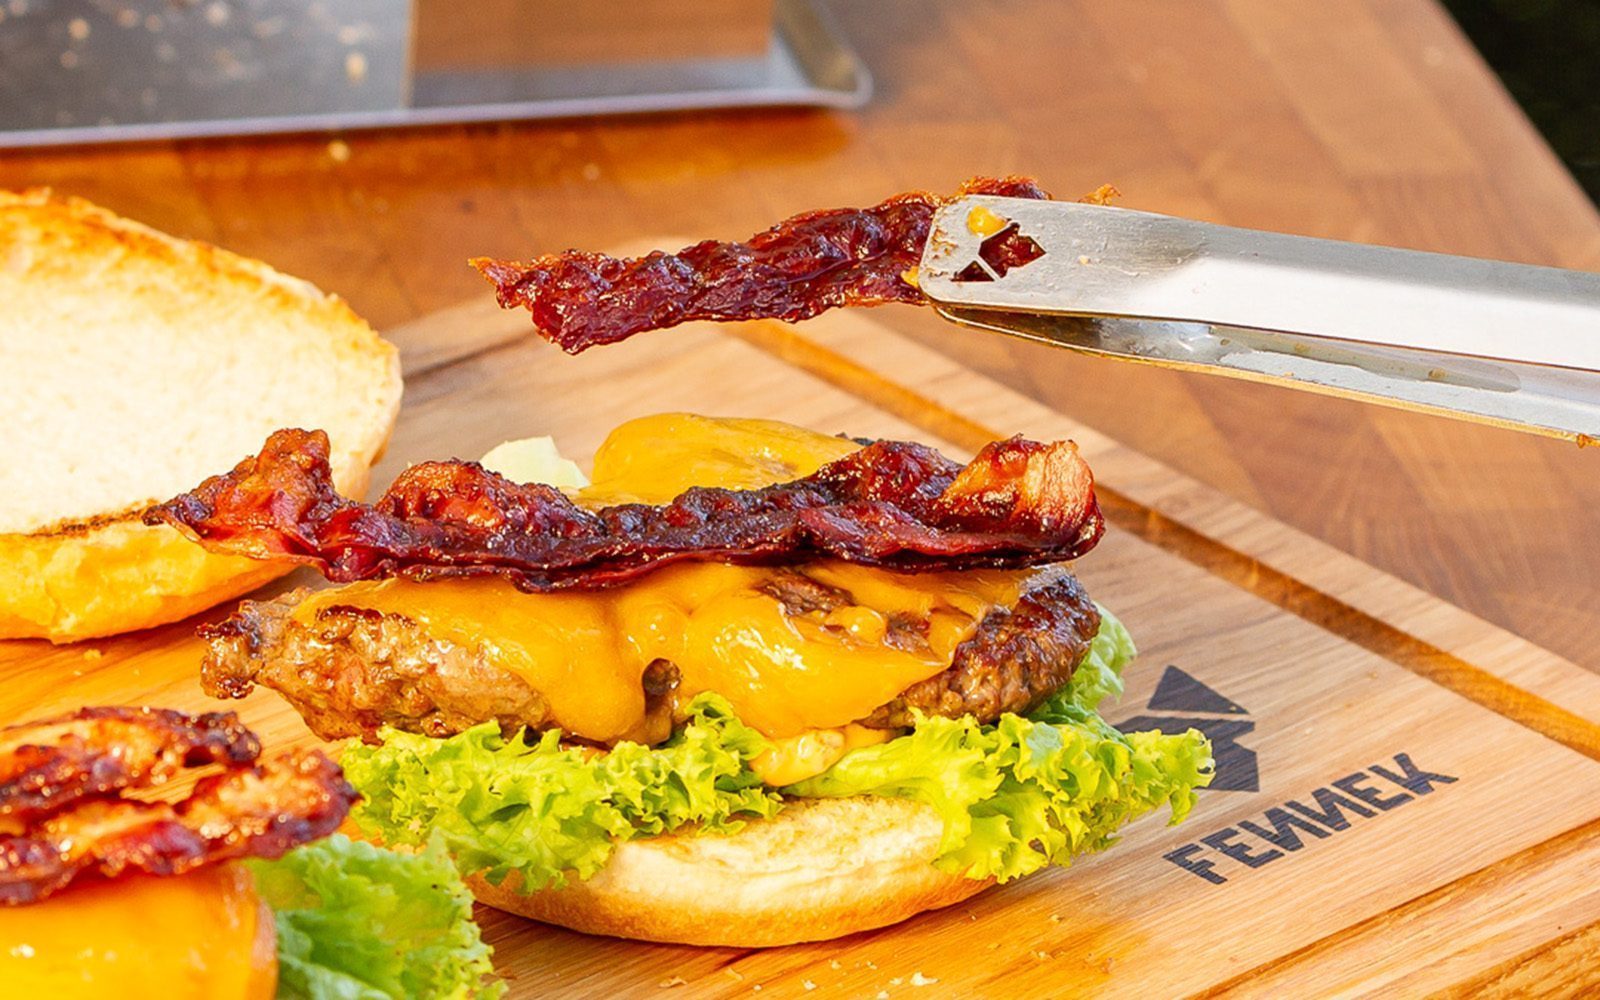 Mit Grillzange wird ein Stück knusprig gebratener Bacon auf einen Hamburger gelegt.